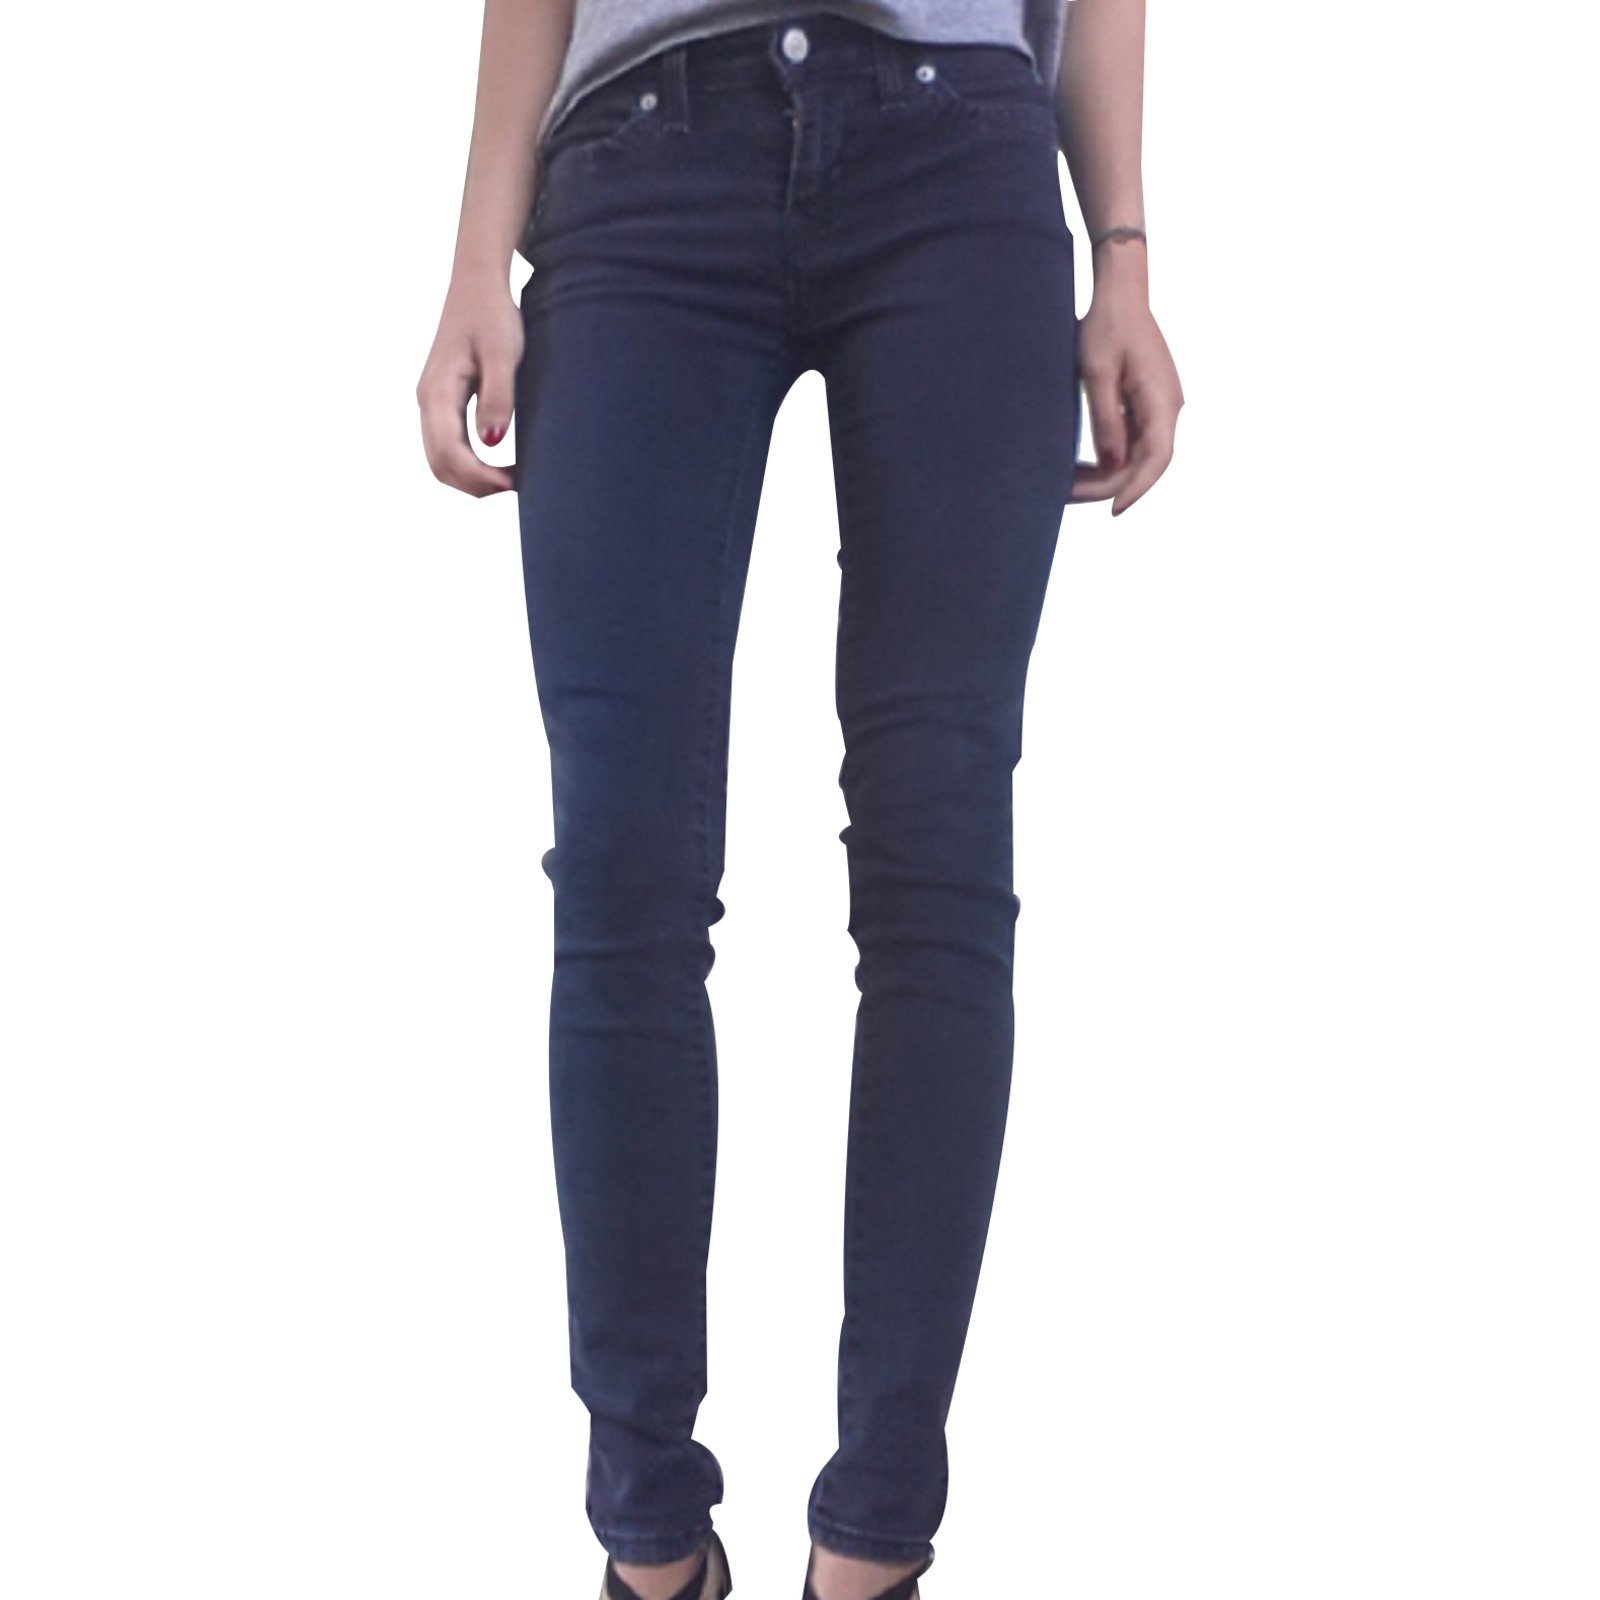 levis leggings jeans 535